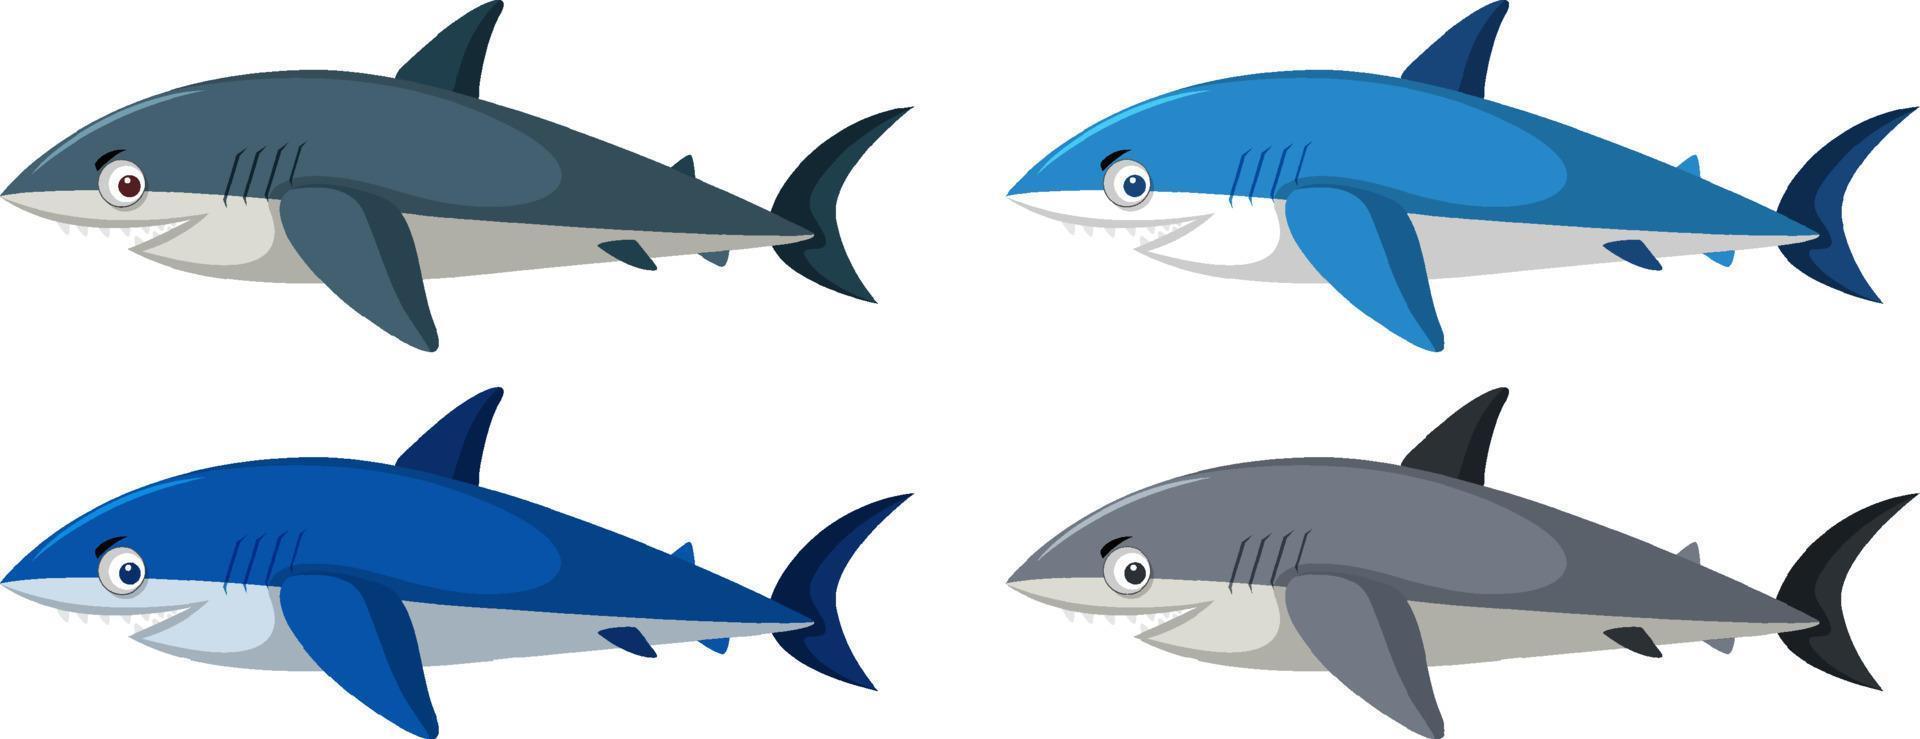 lindo personaje de dibujos animados de tiburón aislado vector